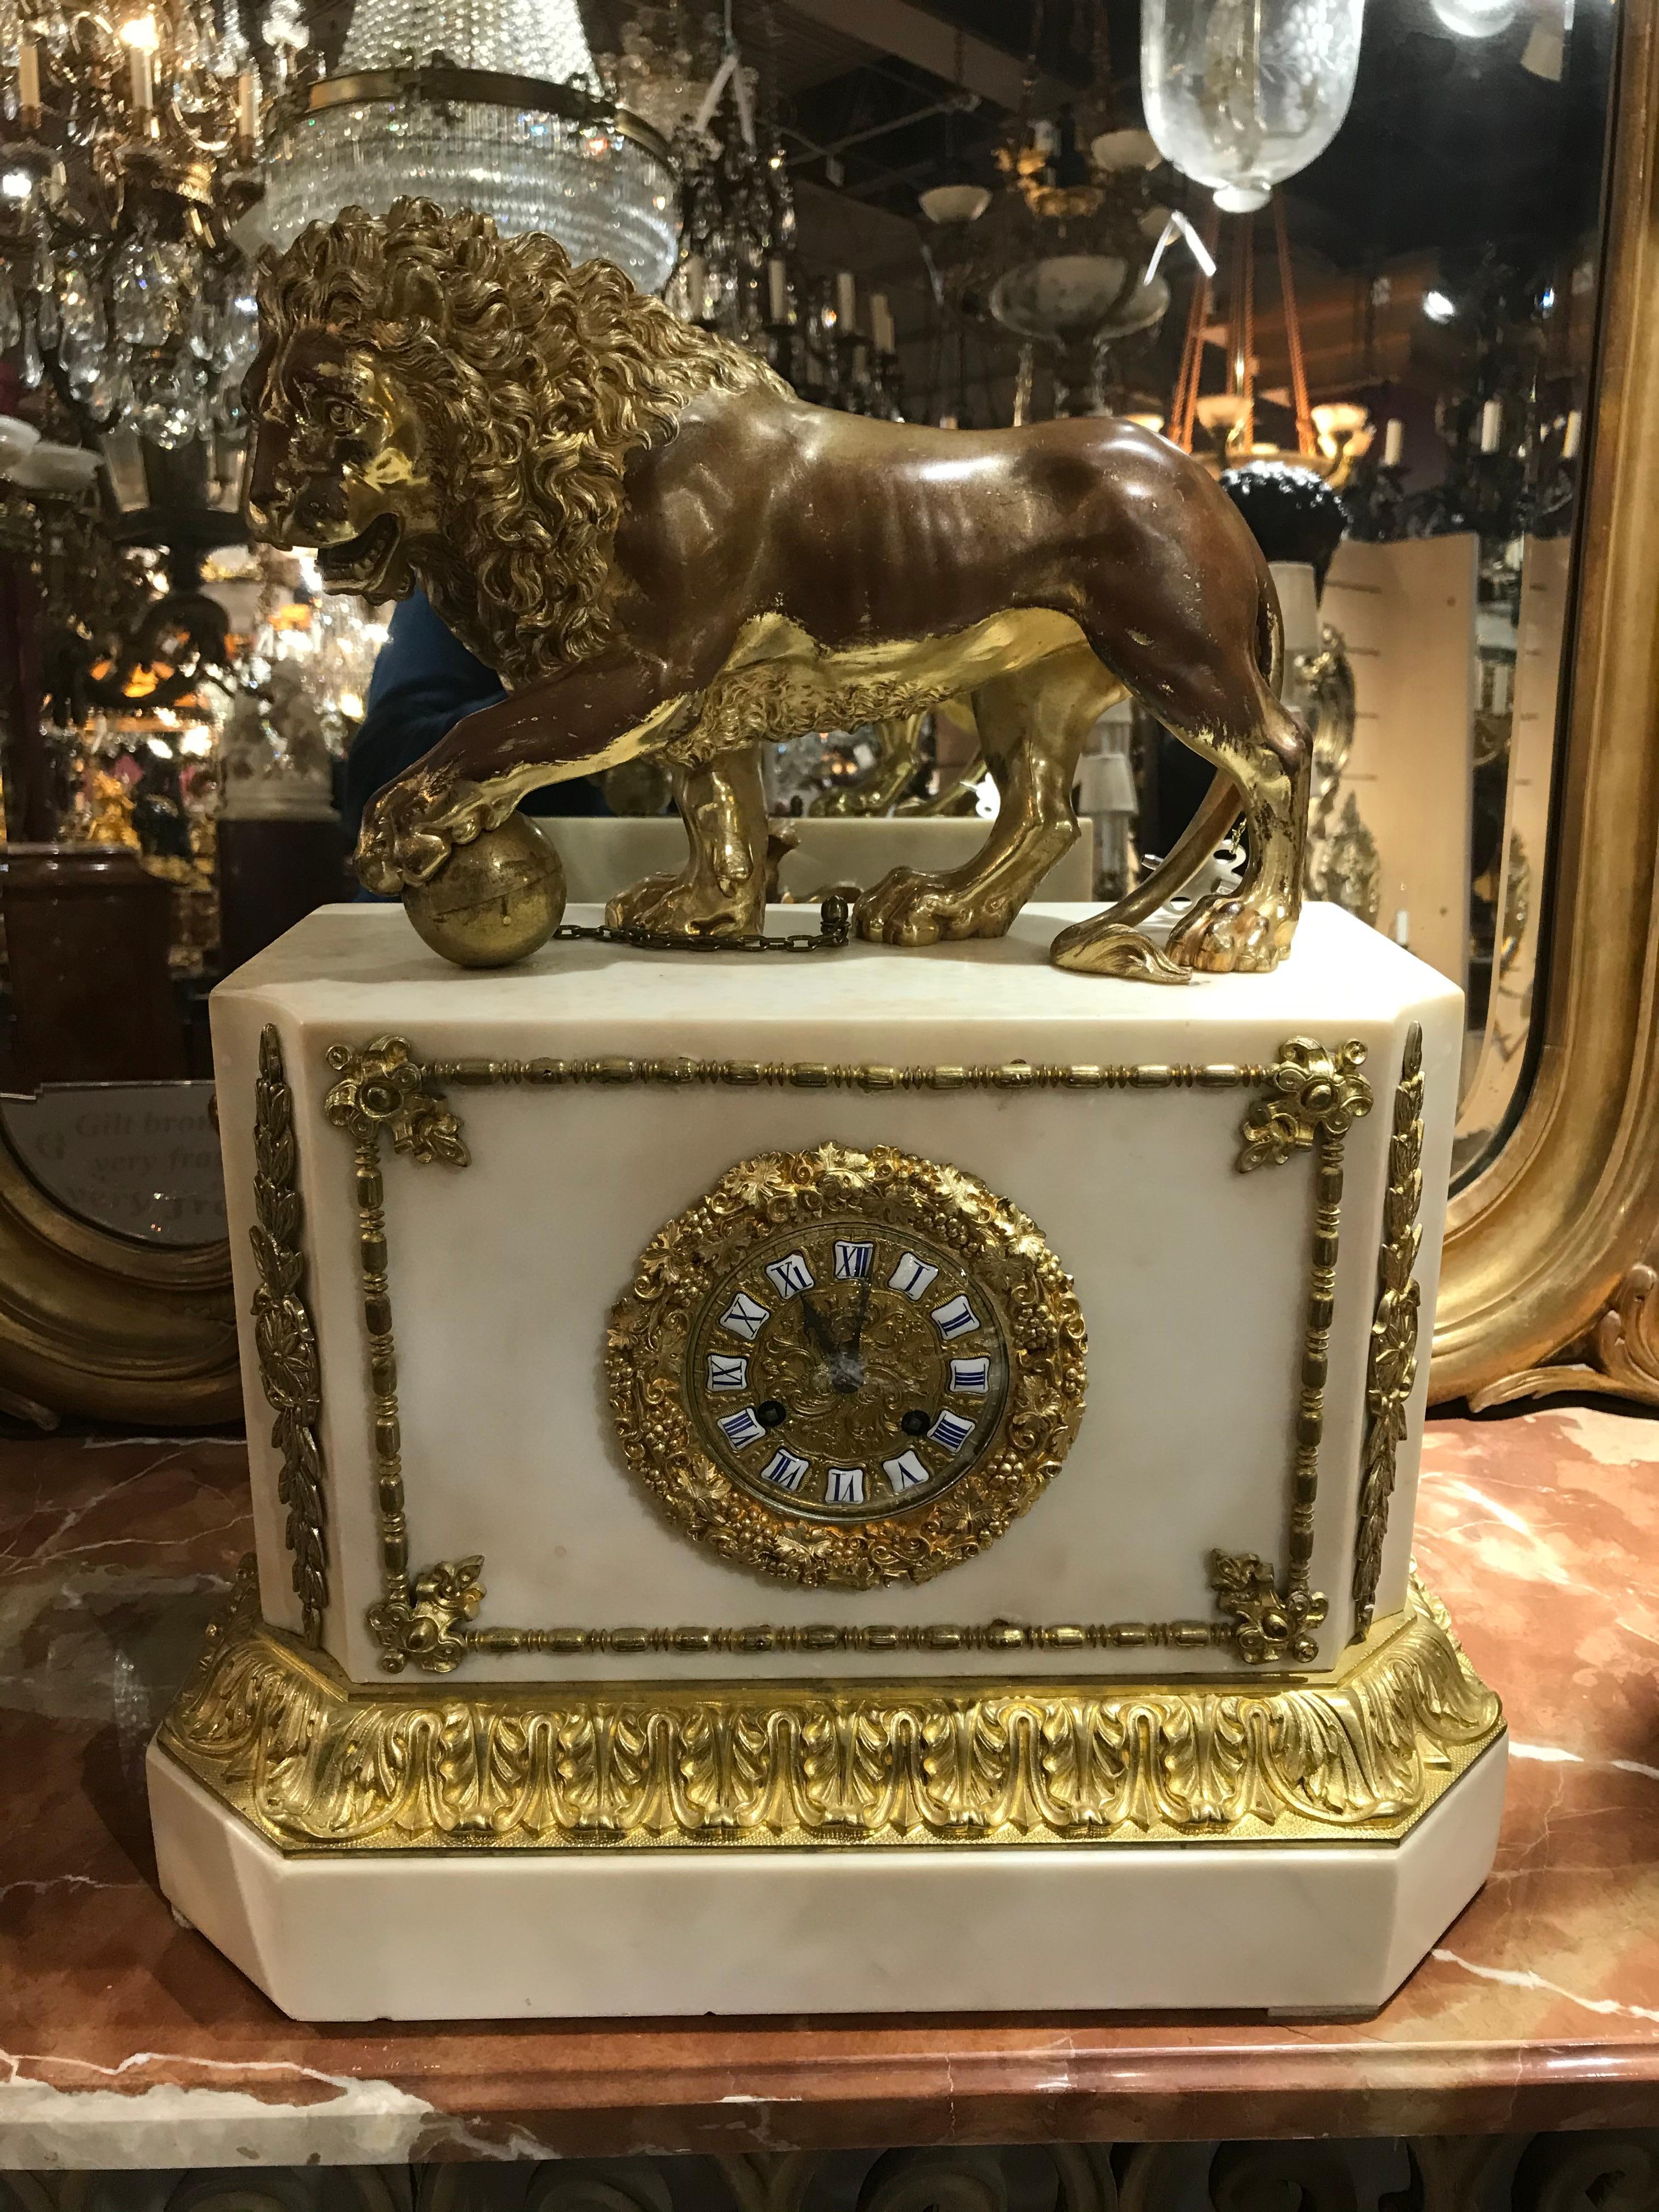 Eine sehr schöne Uhr aus vergoldeter Bronze und Marmor, die einen Löwen darstellt. Marmorgehäuse, verziertes Zifferblatt mit emaillierten römischen Ziffern. Frankreich, um 1880
Abmessungen: Höhe 21